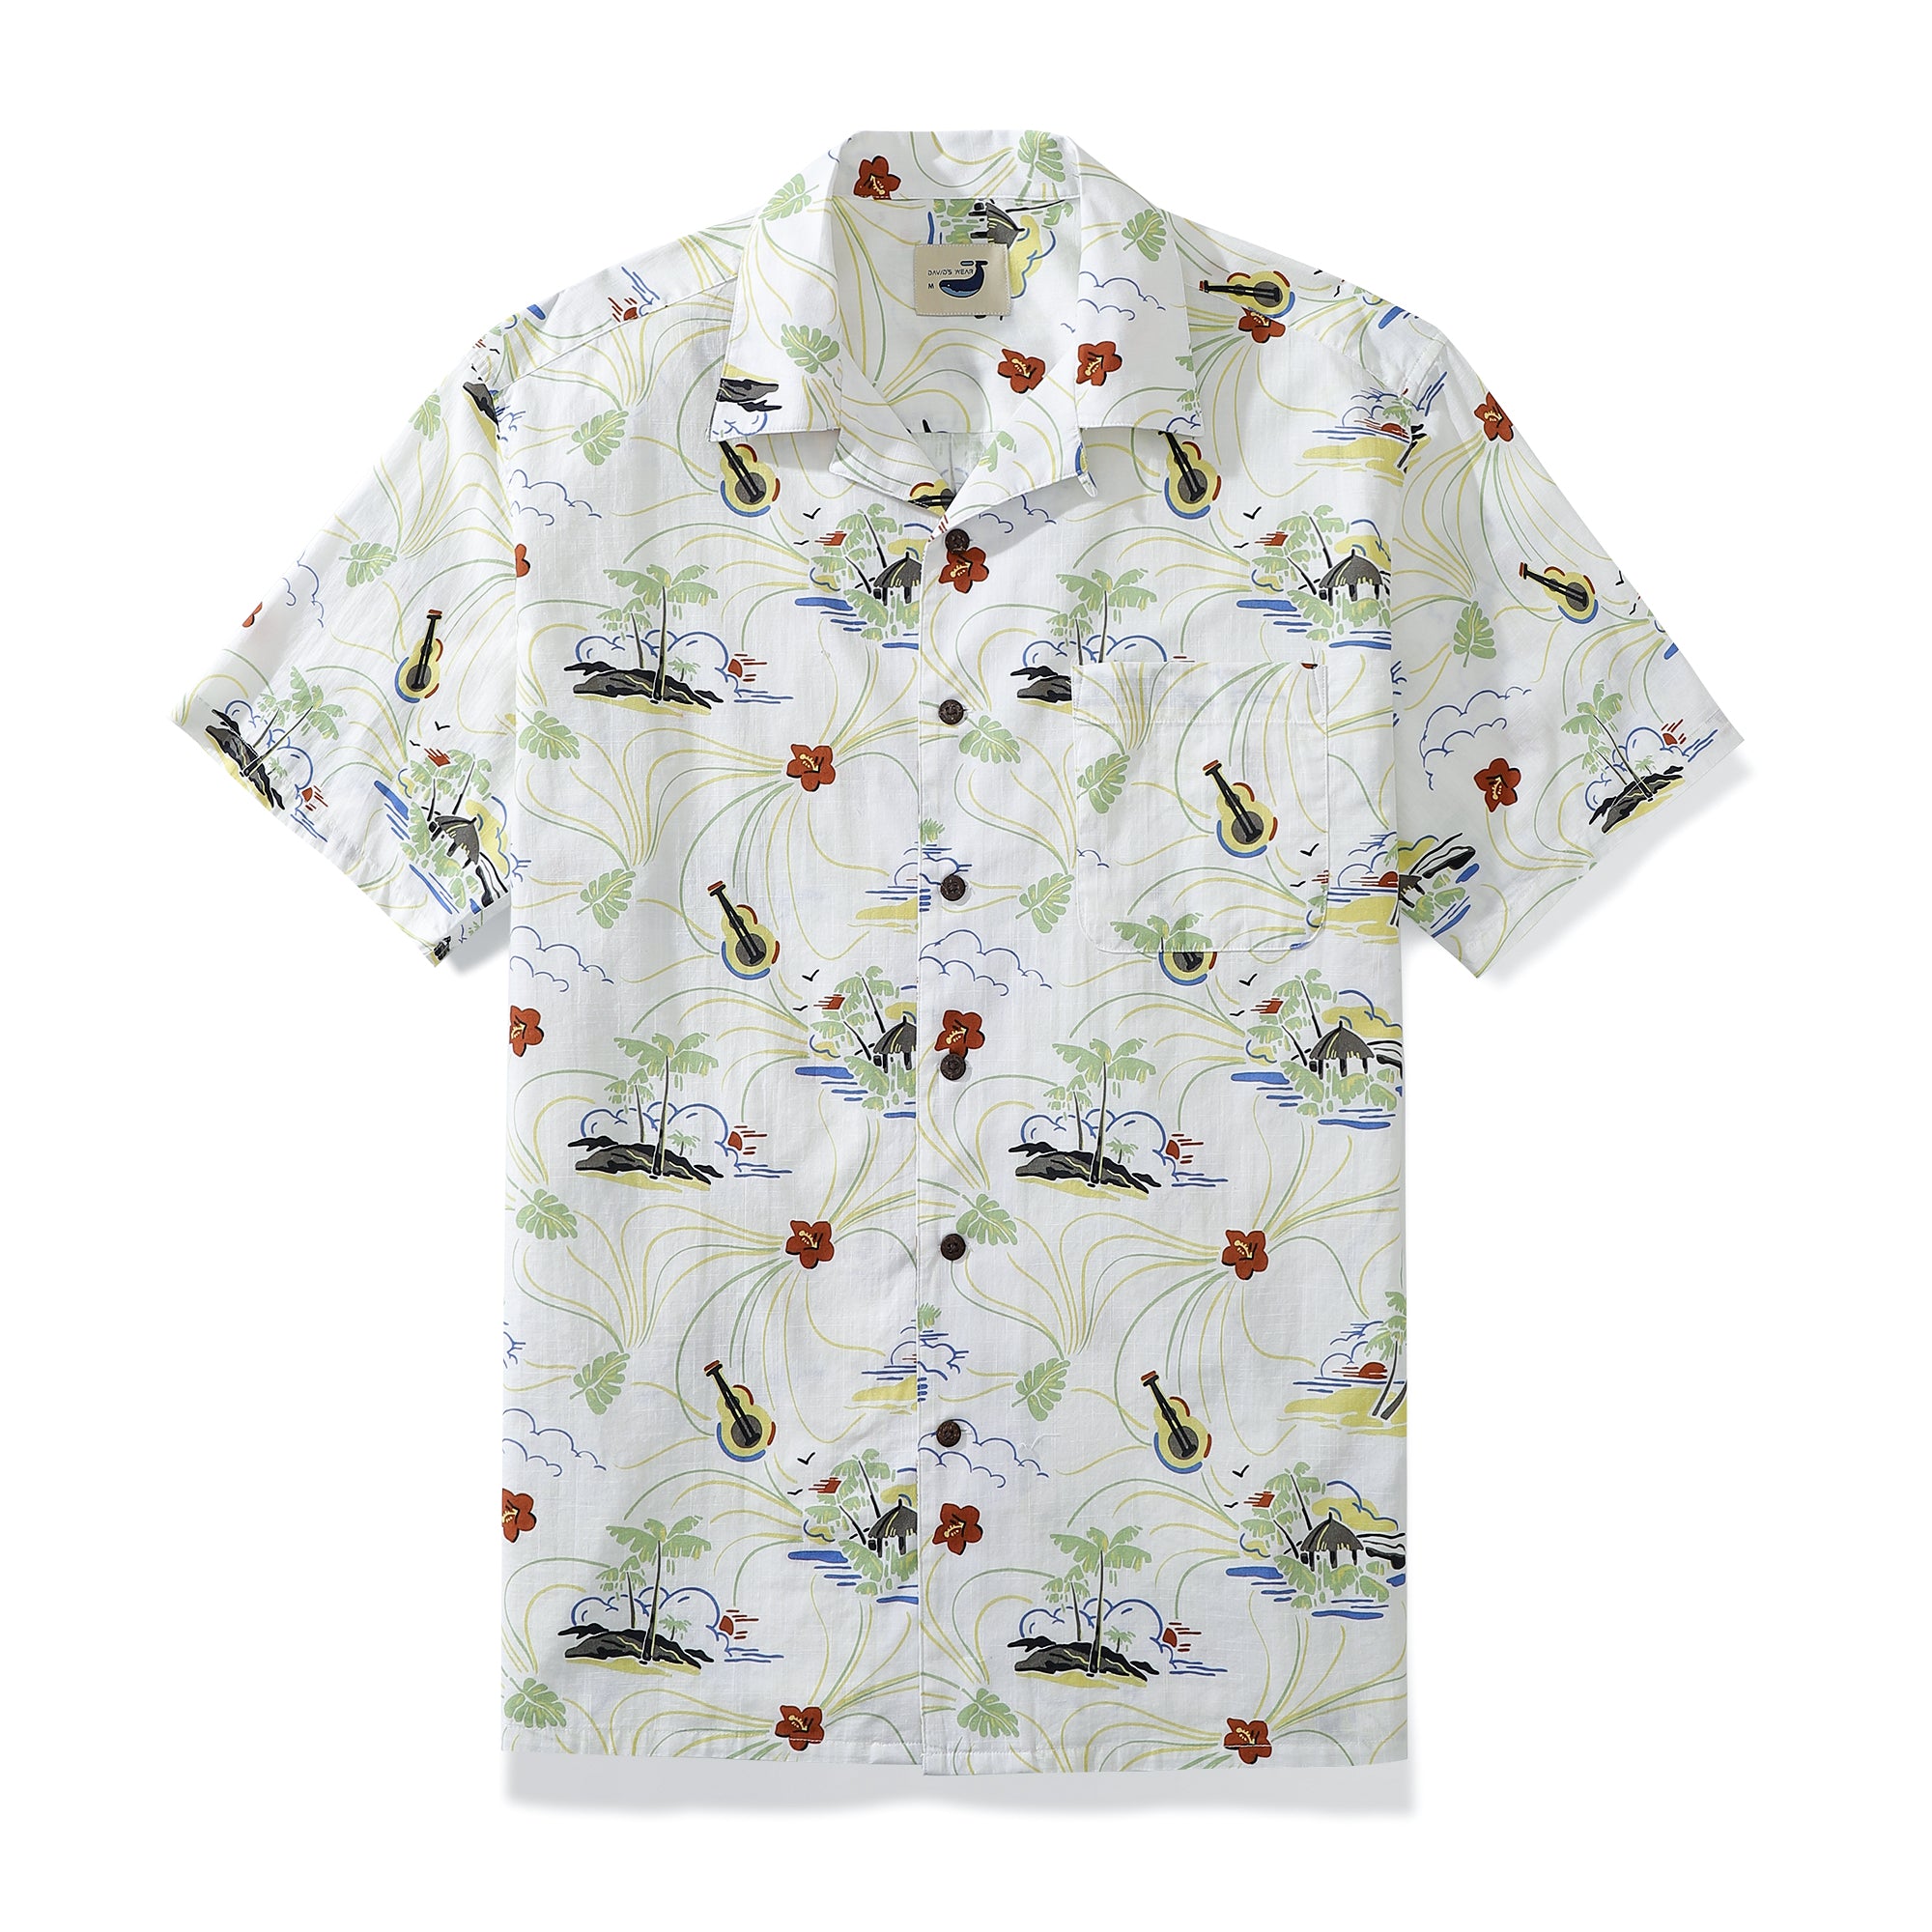 Ukulele Hibiscus Island Sunrise Men's 100% Cotton Camp Shirts